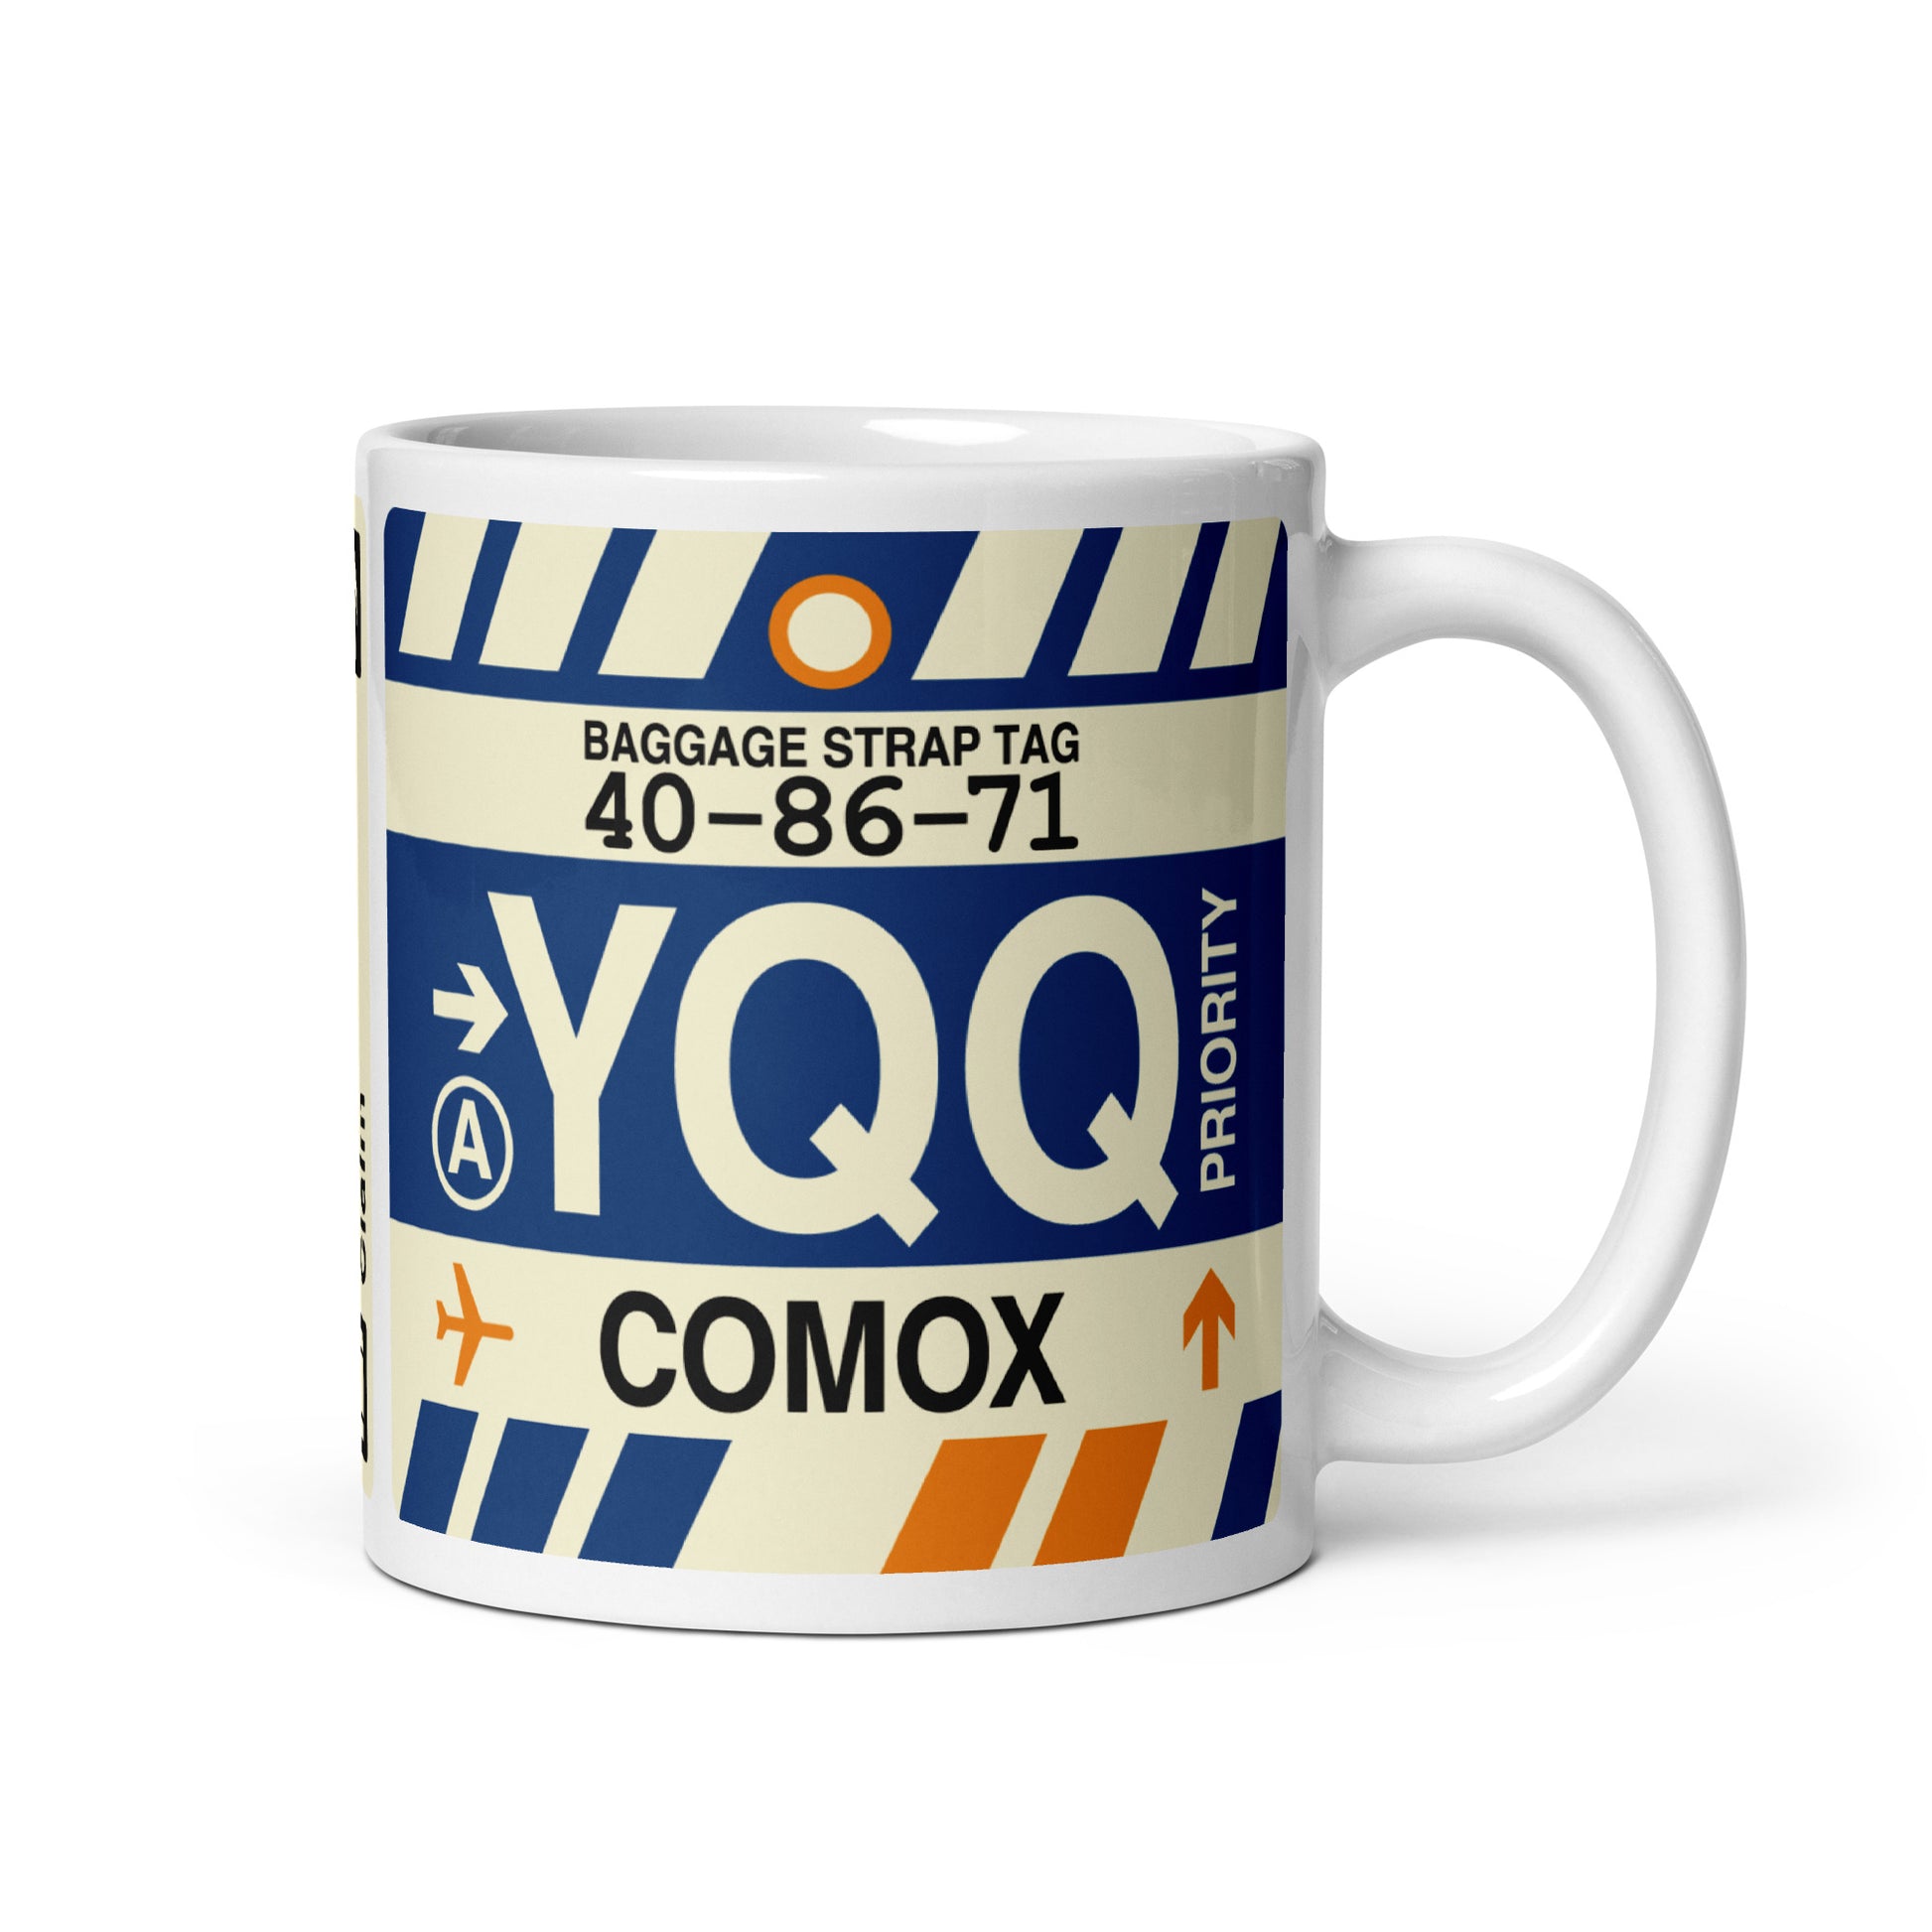 Travel-Themed Coffee Mug • YQQ Comox • YHM Designs - Image 01